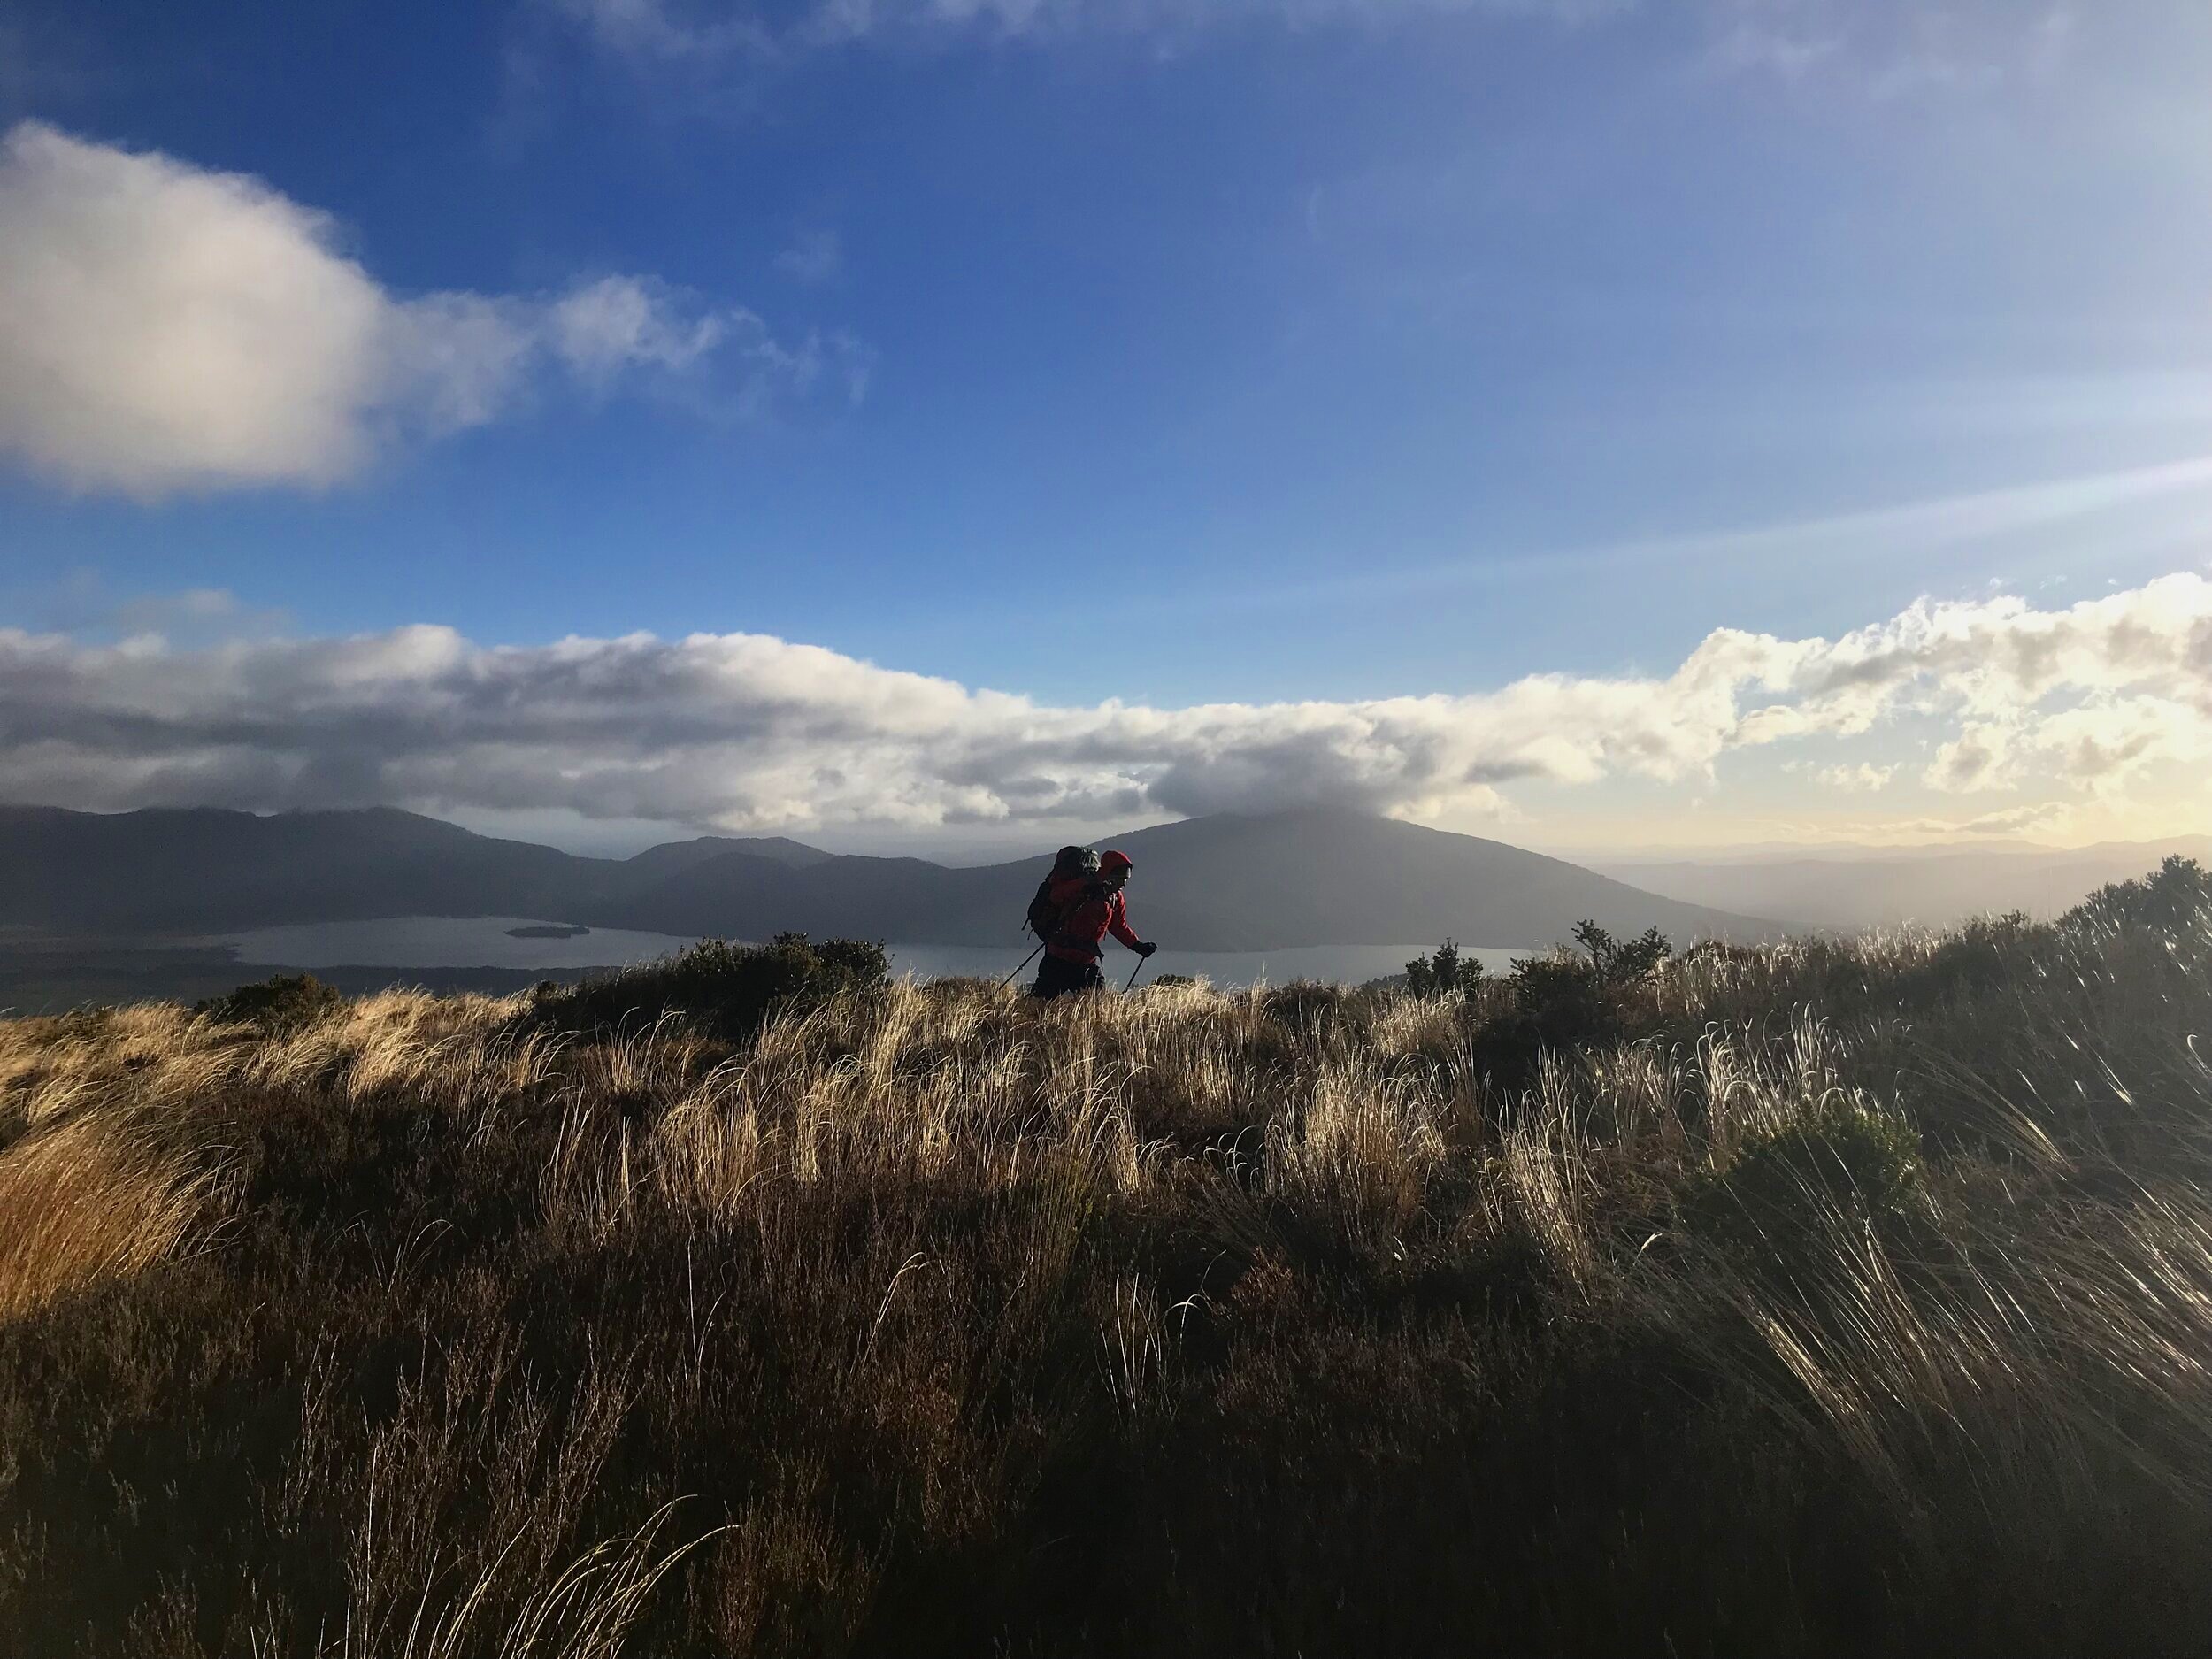 Simon hiking through New Zealand.